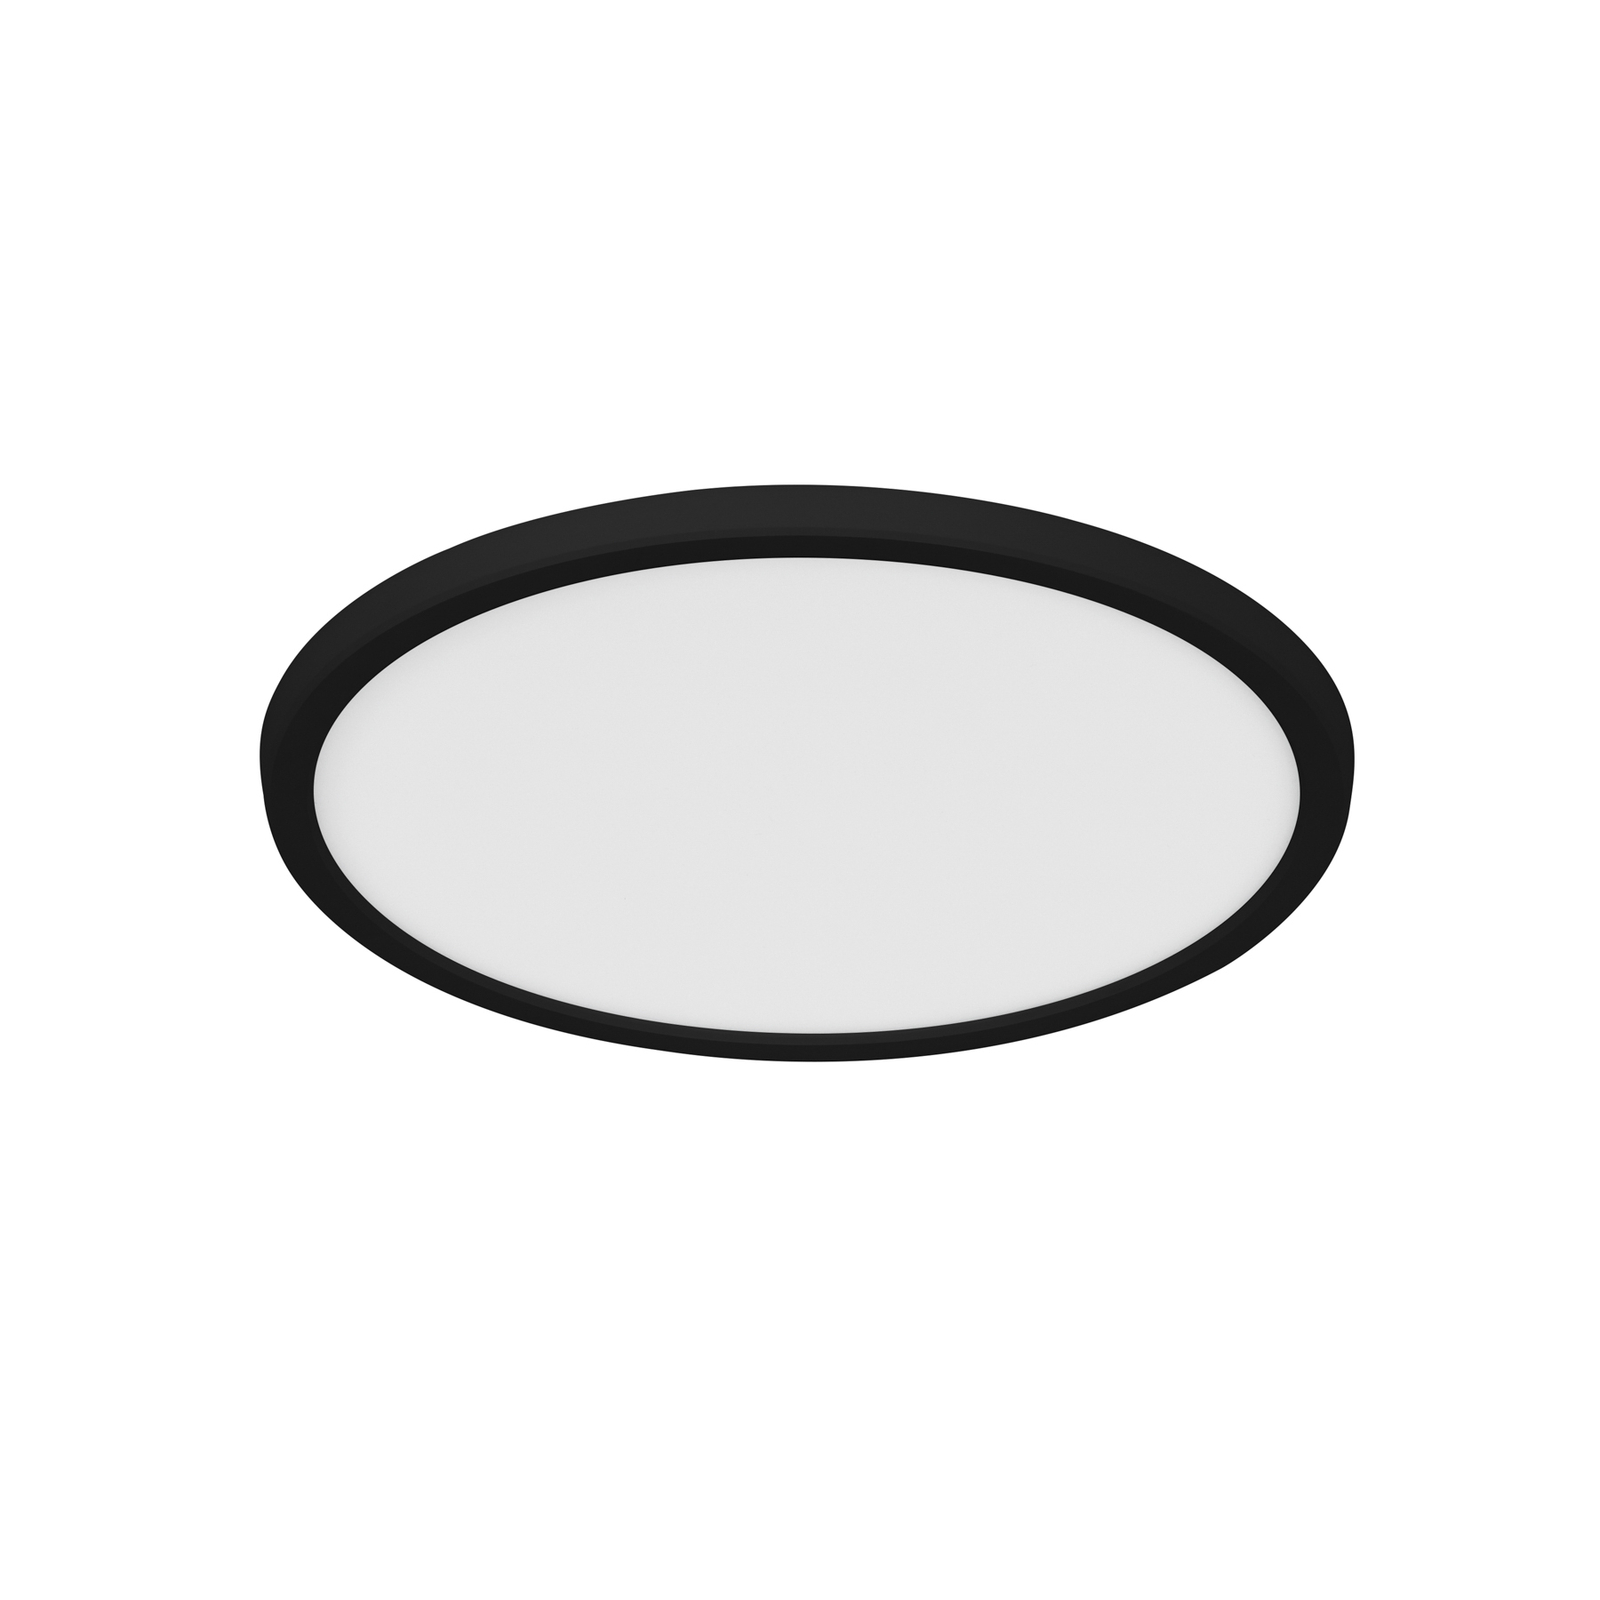 Stropní svítidlo LED Oja Smart, černé, Ø 29 cm